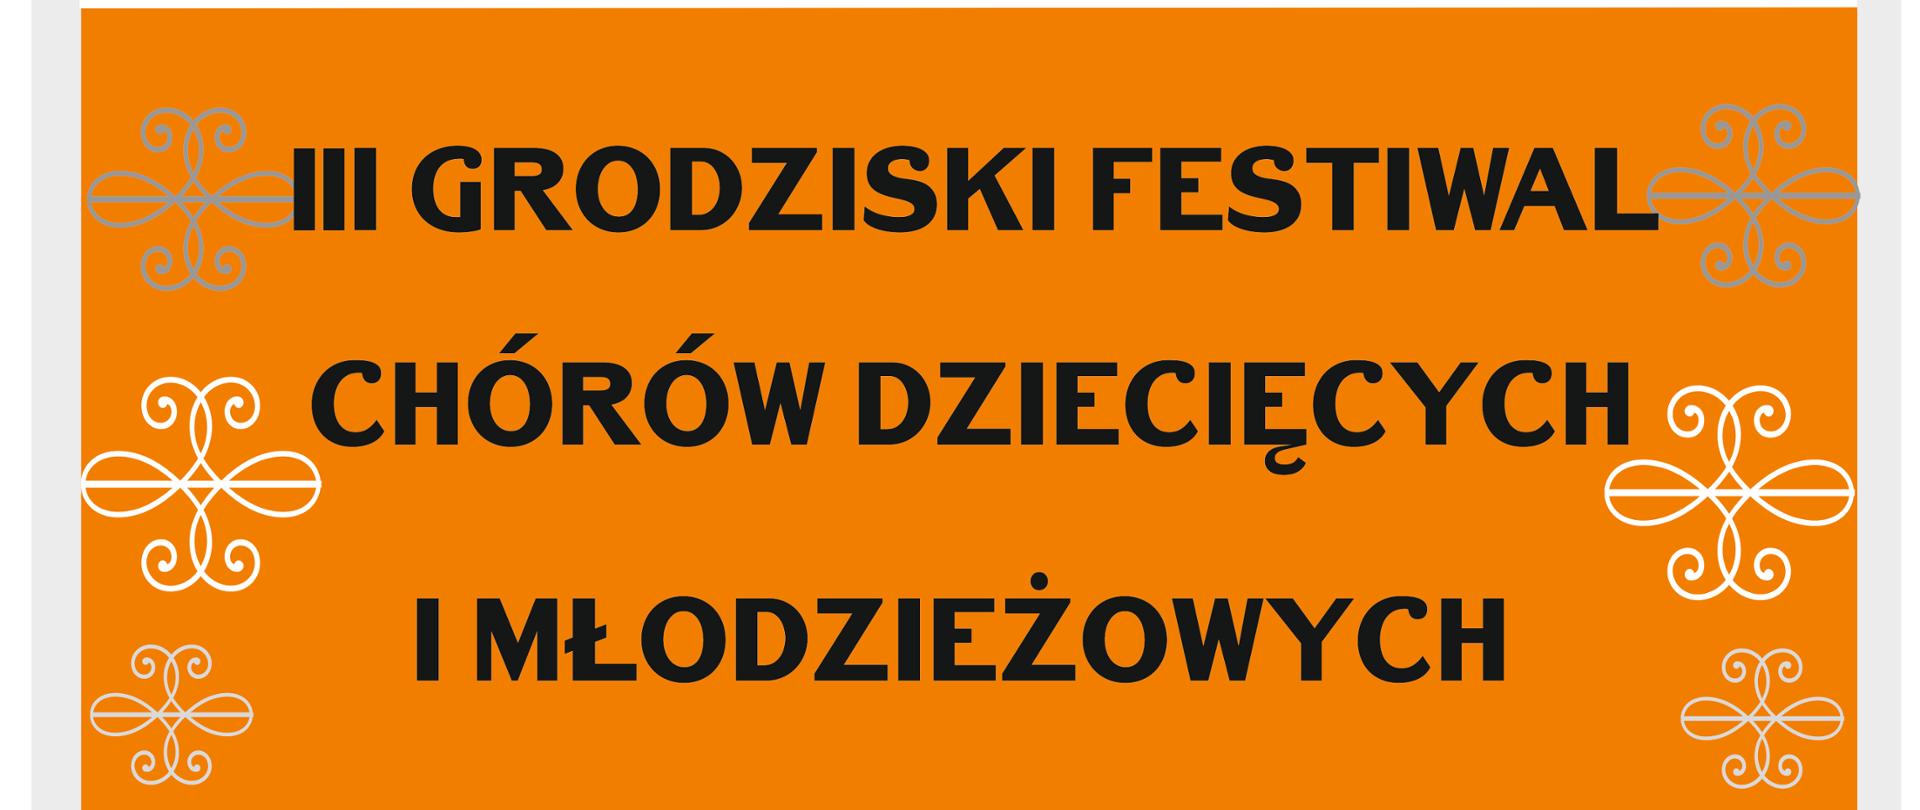 biało pomarańczowy plakat z czarnymi literami z informacjami dotyczącymi festiwalu Chórów dziecięcych